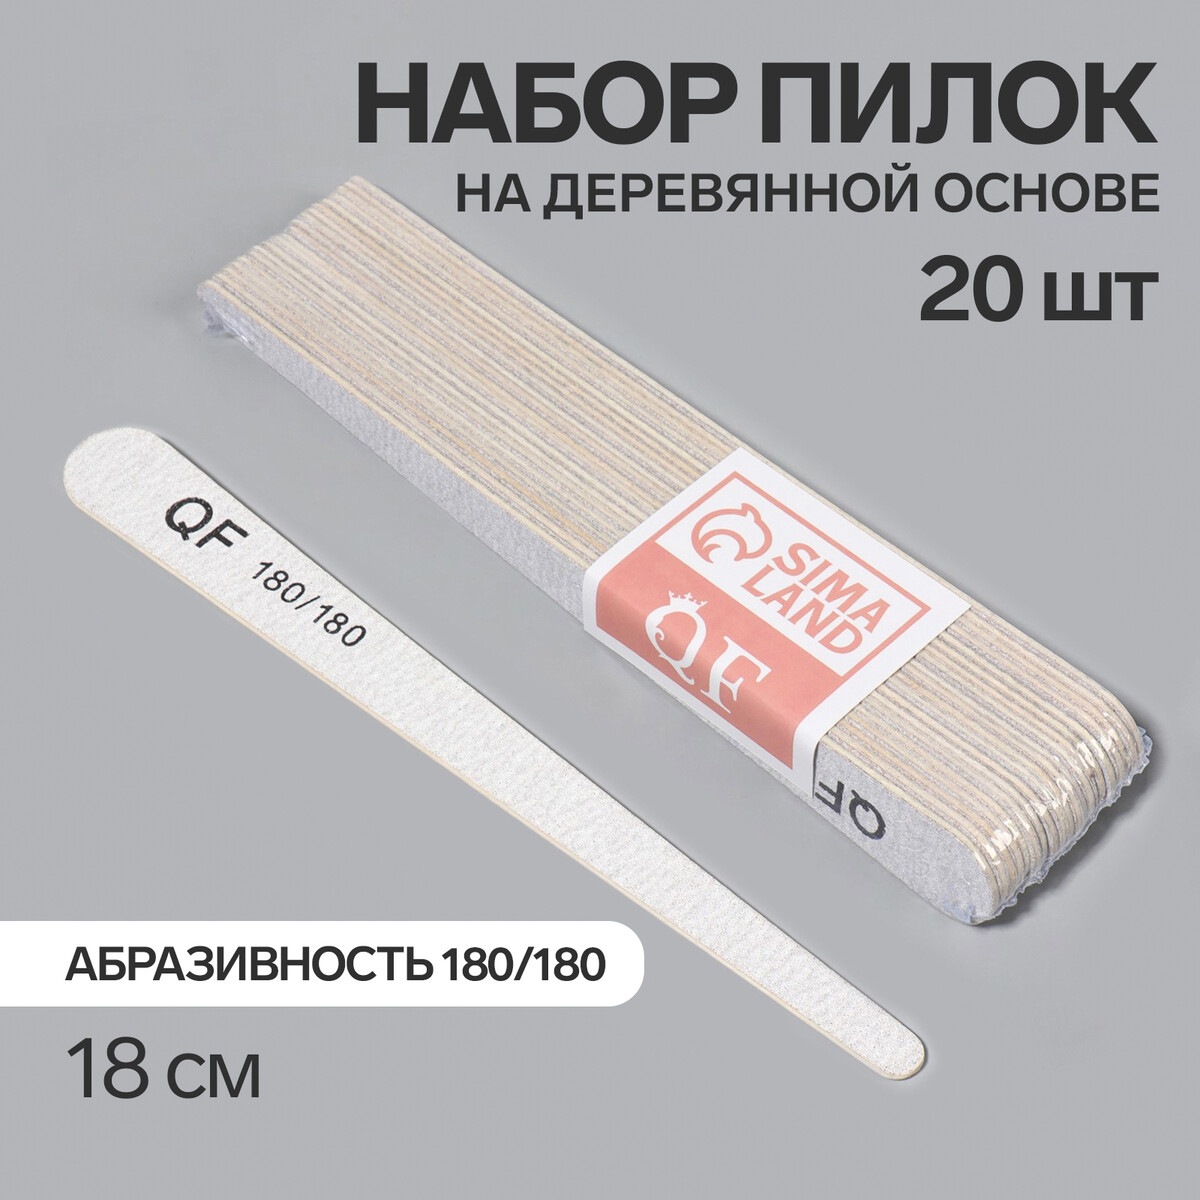 Пилка-наждак, набор 20 шт, деревянная основа, абразивность 180/180, 18 см, цвет серый палка основа для макраме деревянная без покрытия d 2 2 × 20 см